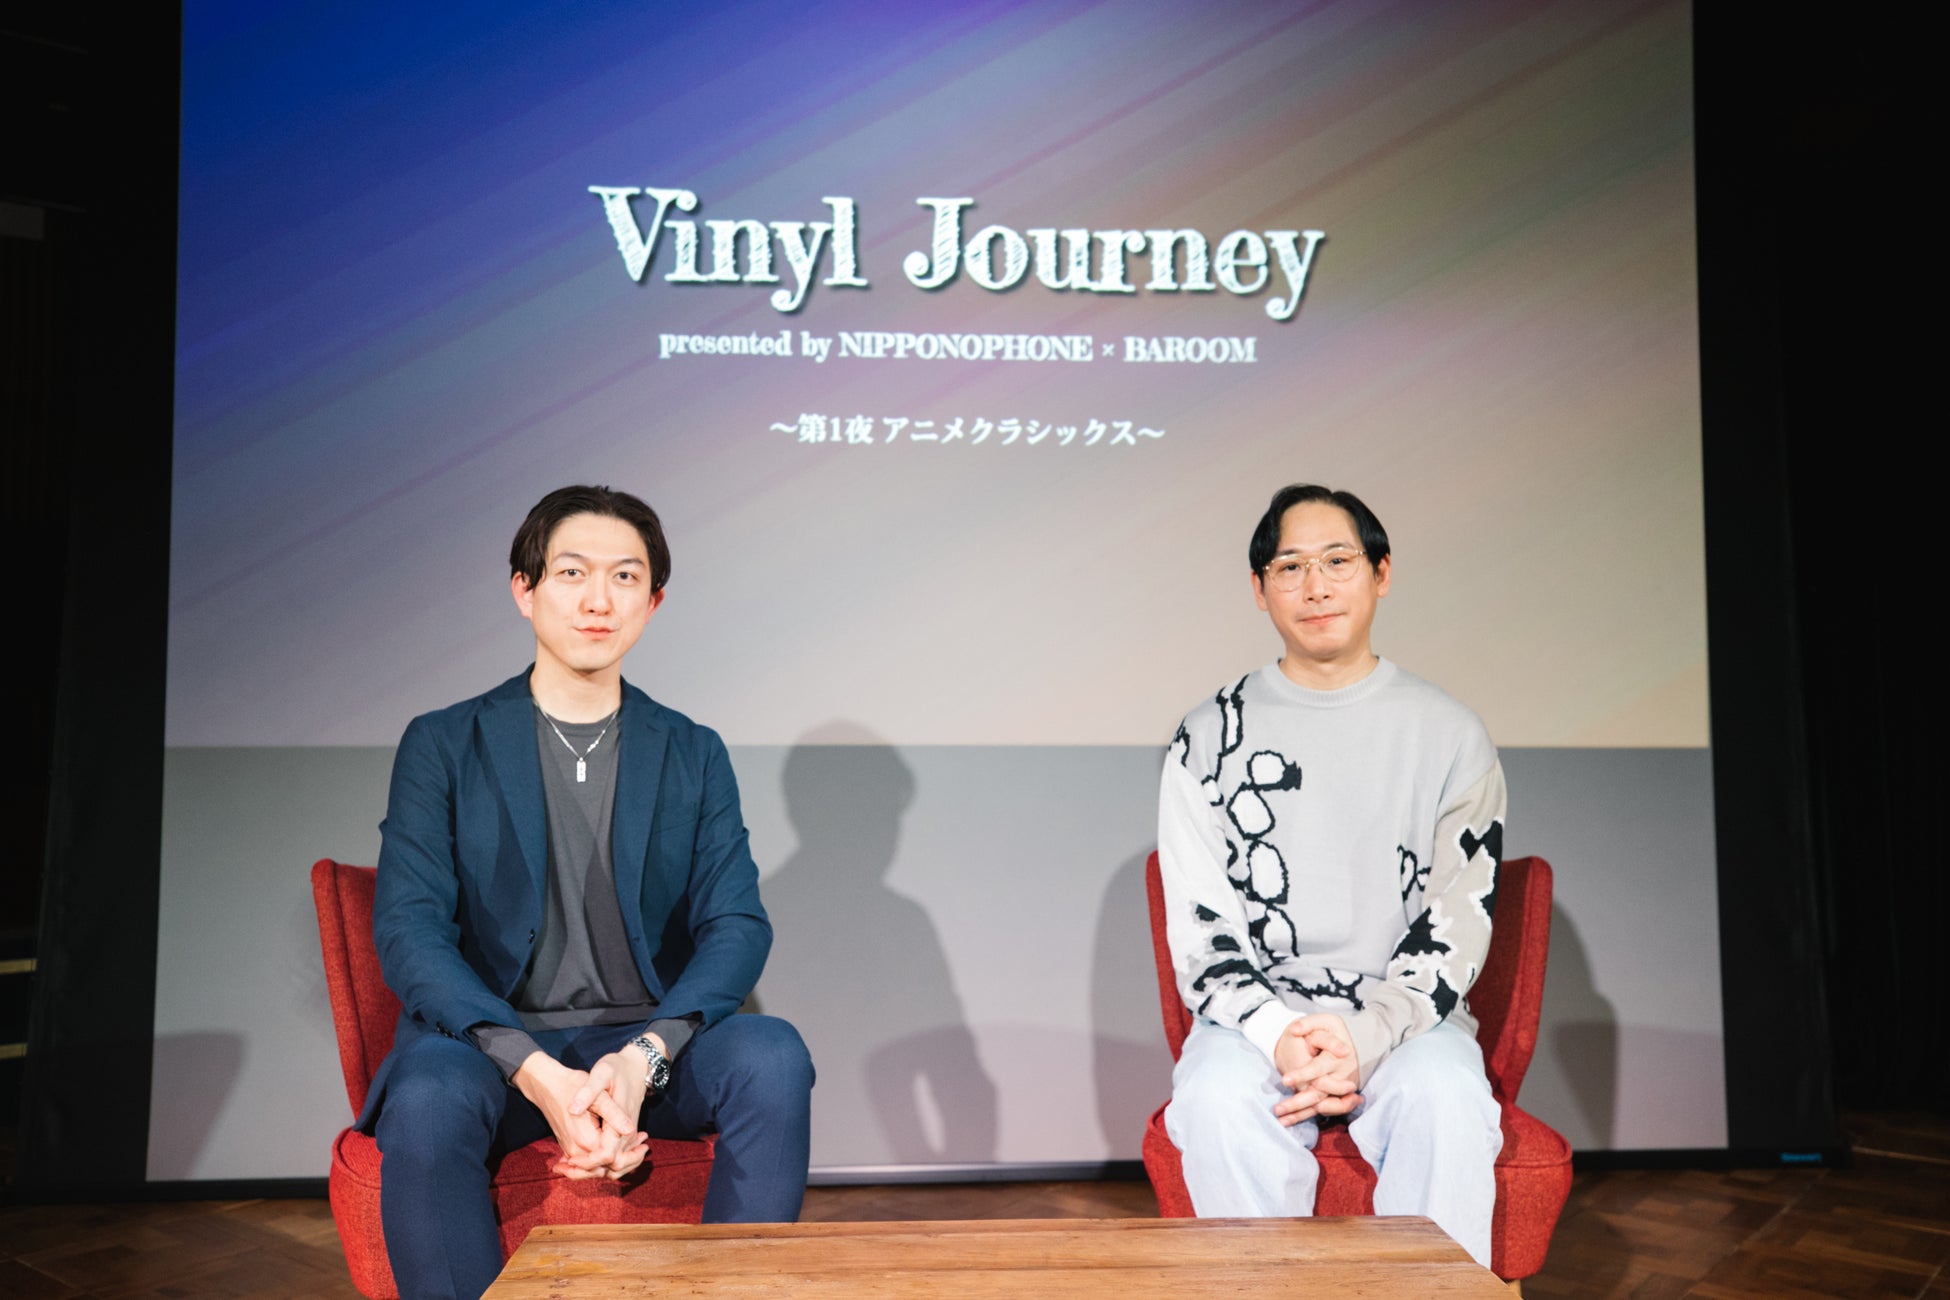 日本コロムビア・ノスタルジックイベントシリーズ『Vinyl Journey』第1夜 のイベントレポートが到着！